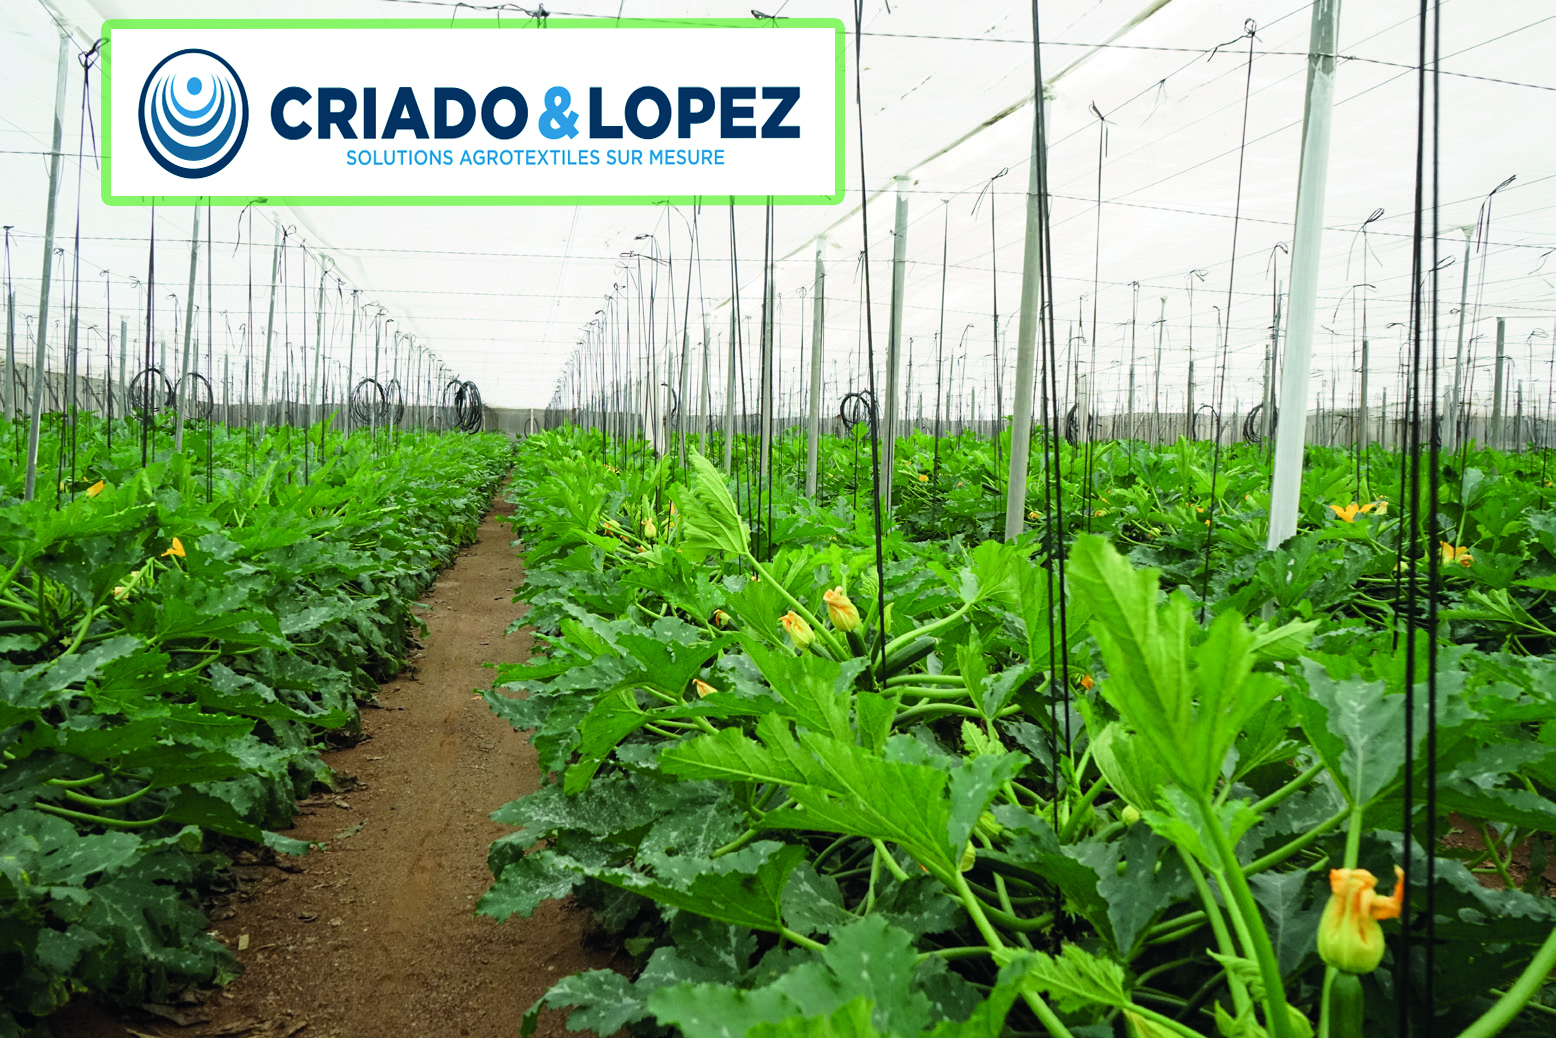 Criado y López, leader dans la fabrication des filets agricoles